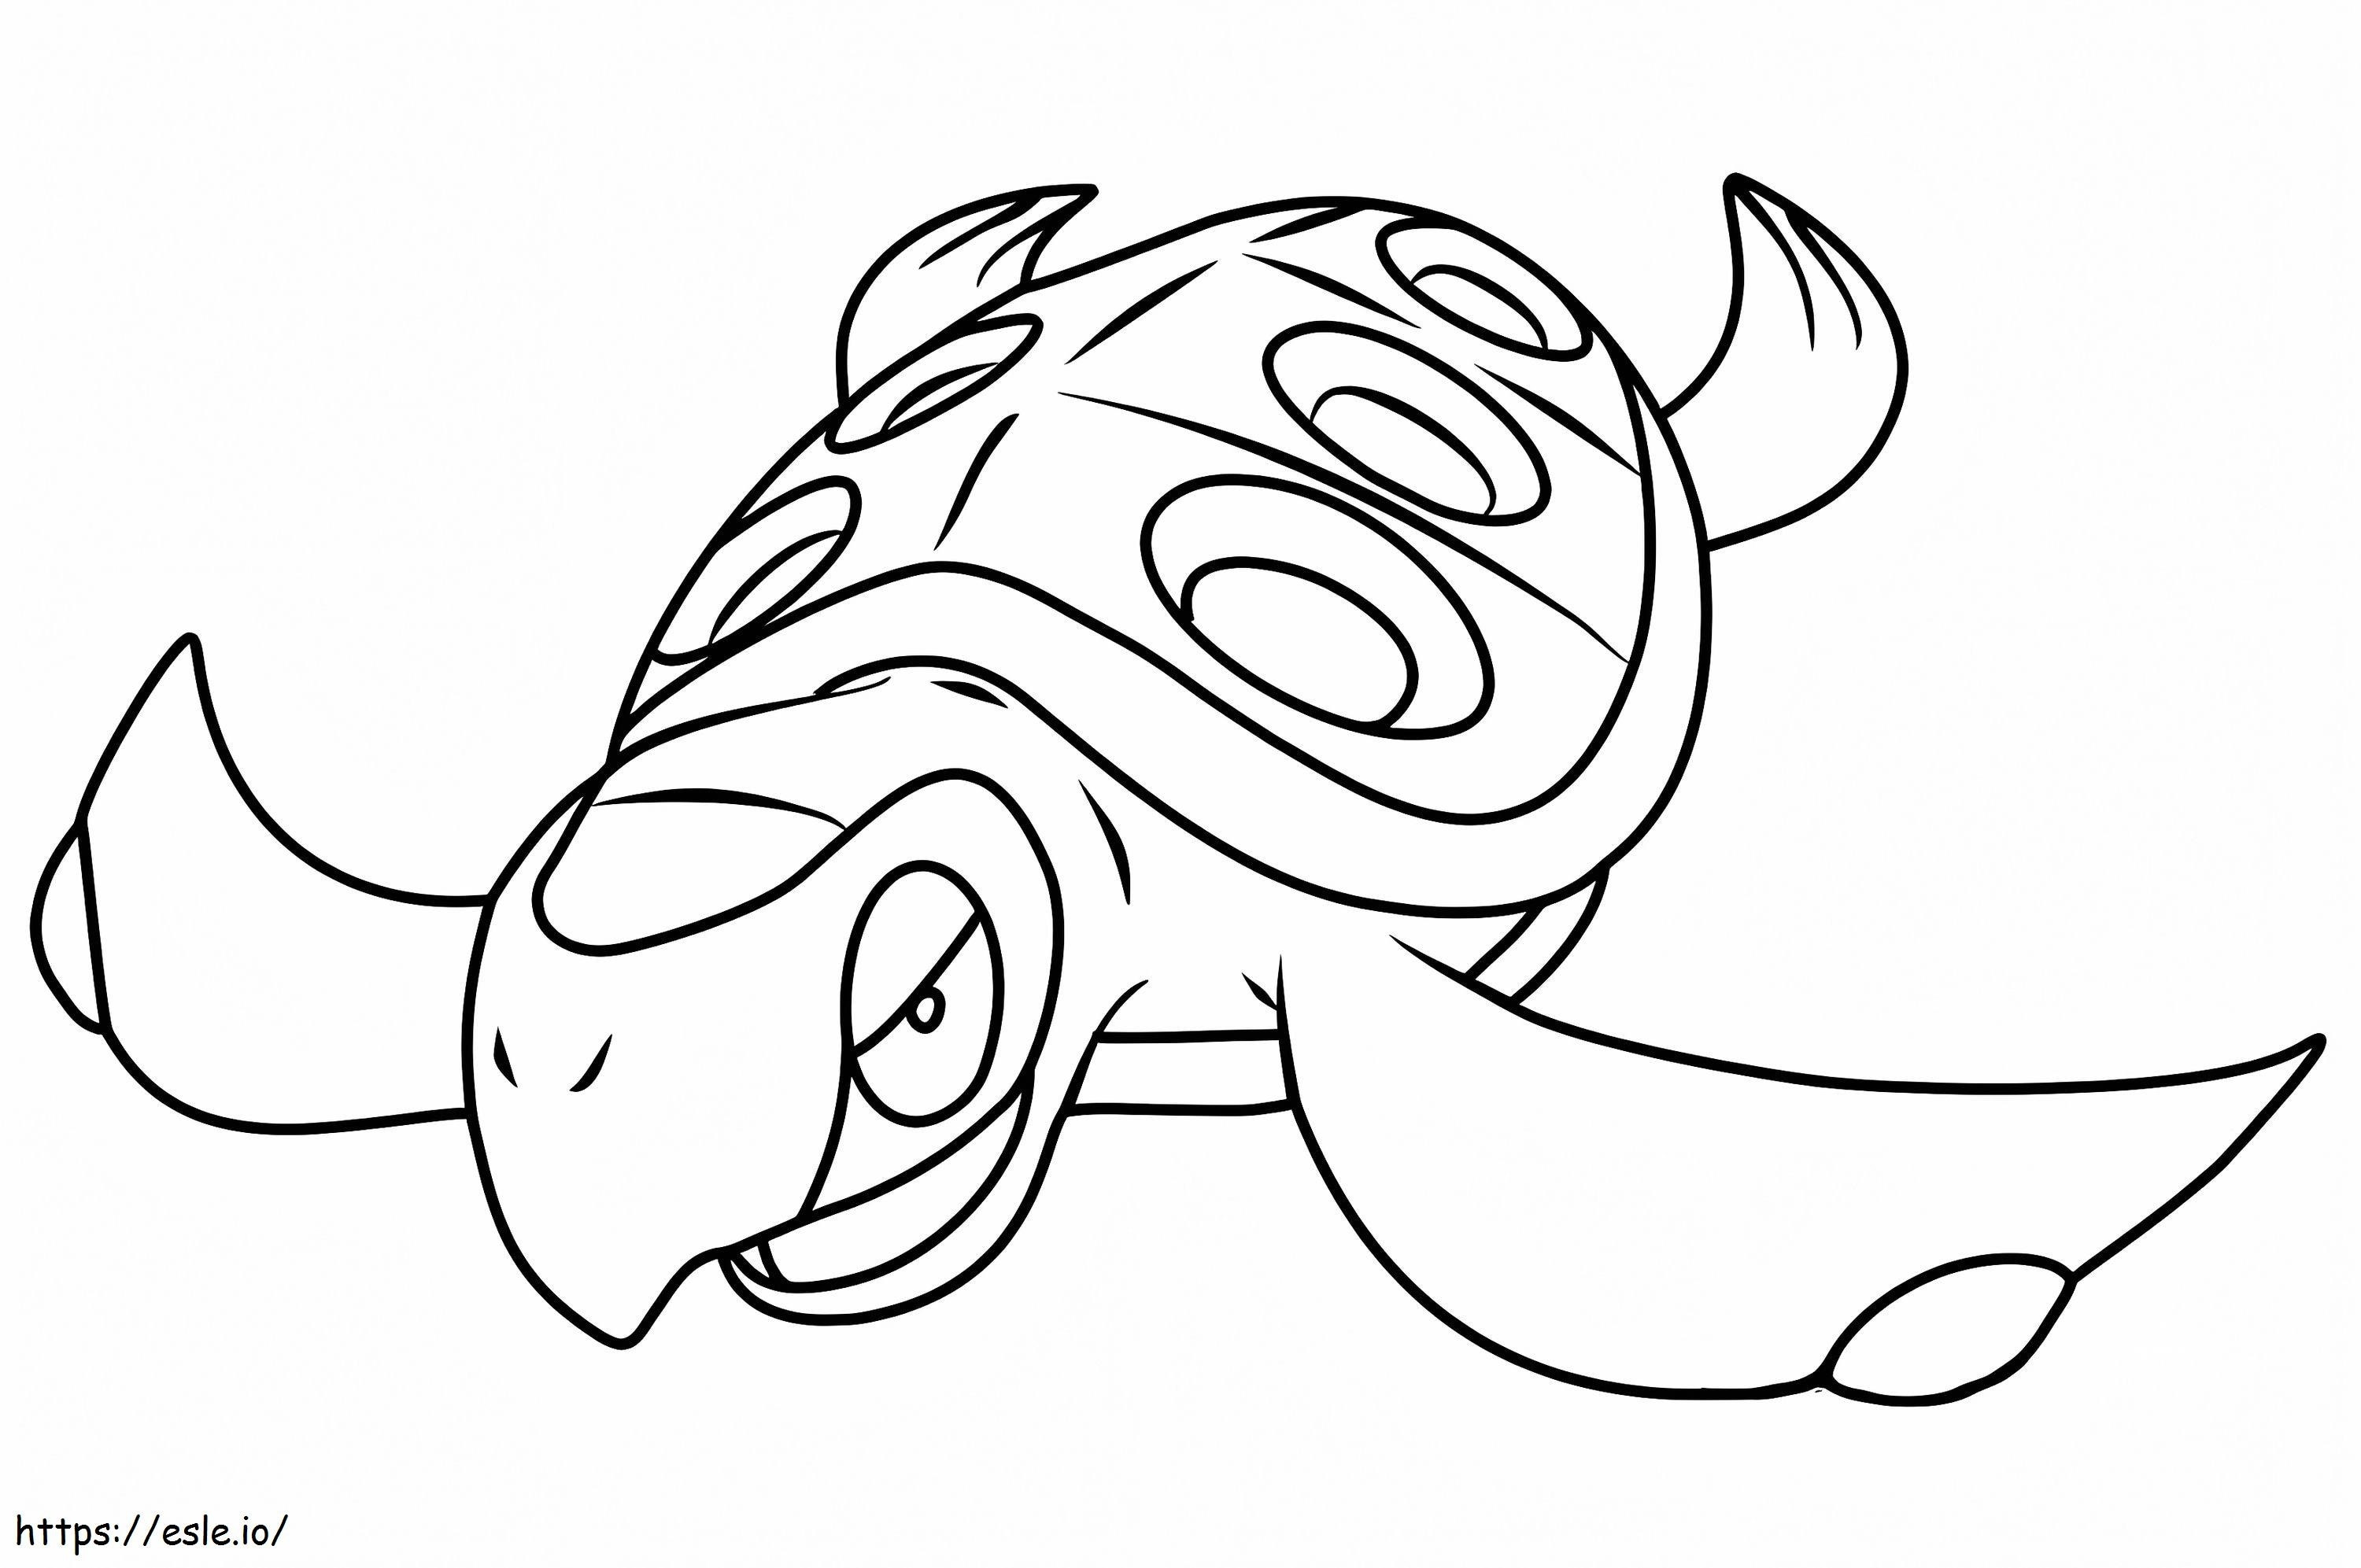 Coloriage Pokémon Tirtouga Gen 5 à imprimer dessin